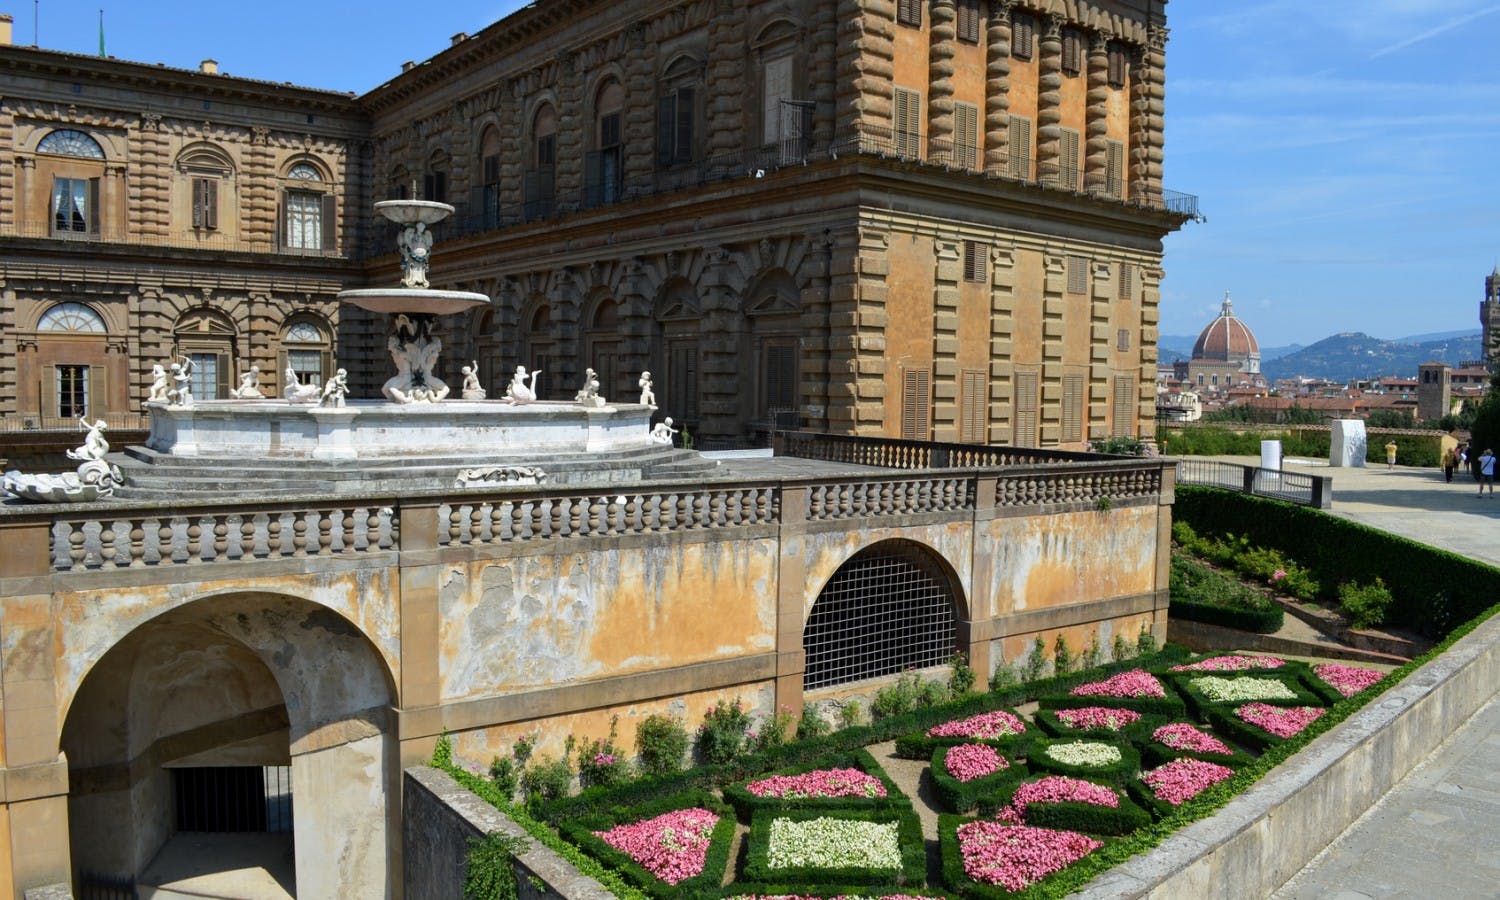 Rondleiding door Palazzo Pitti: de pracht en praal van de Medici-dynastie